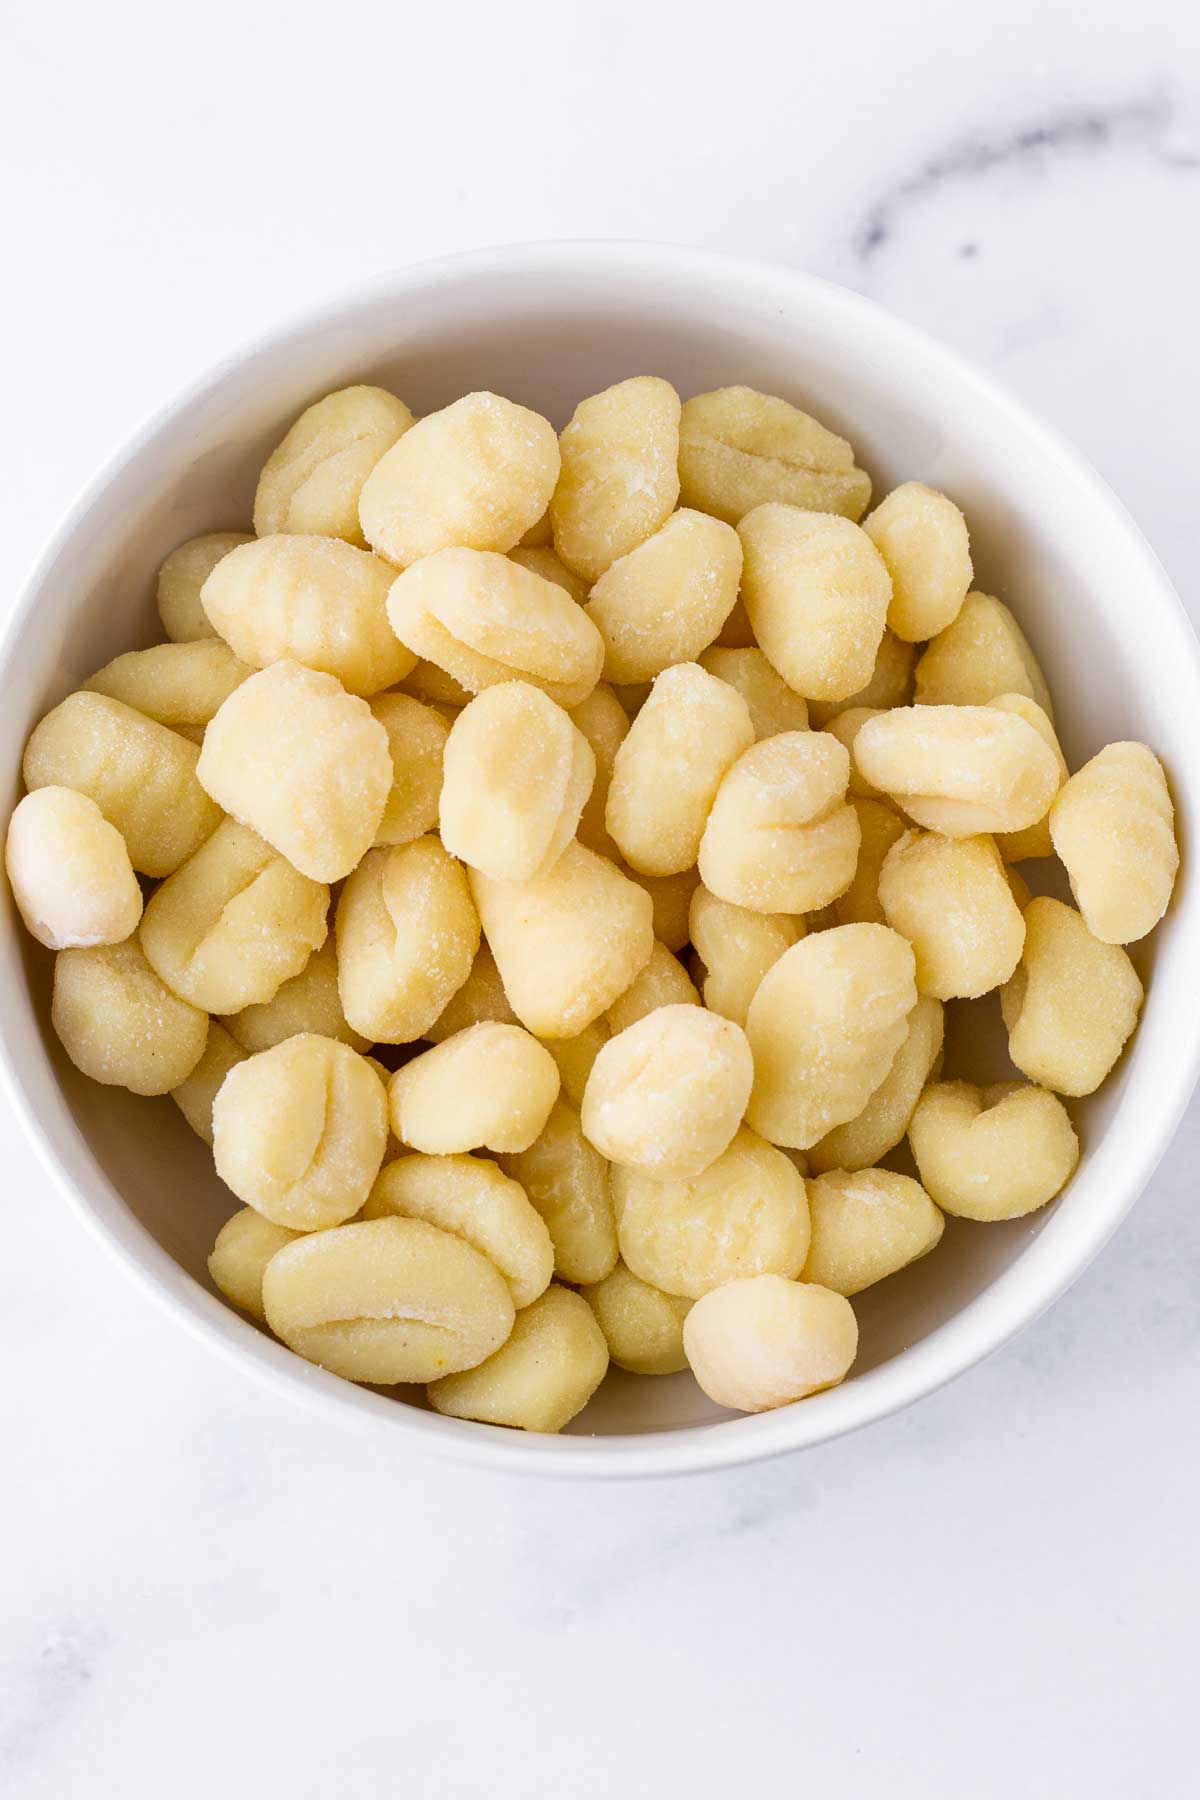 uncooked potato gnocchi in a bowl